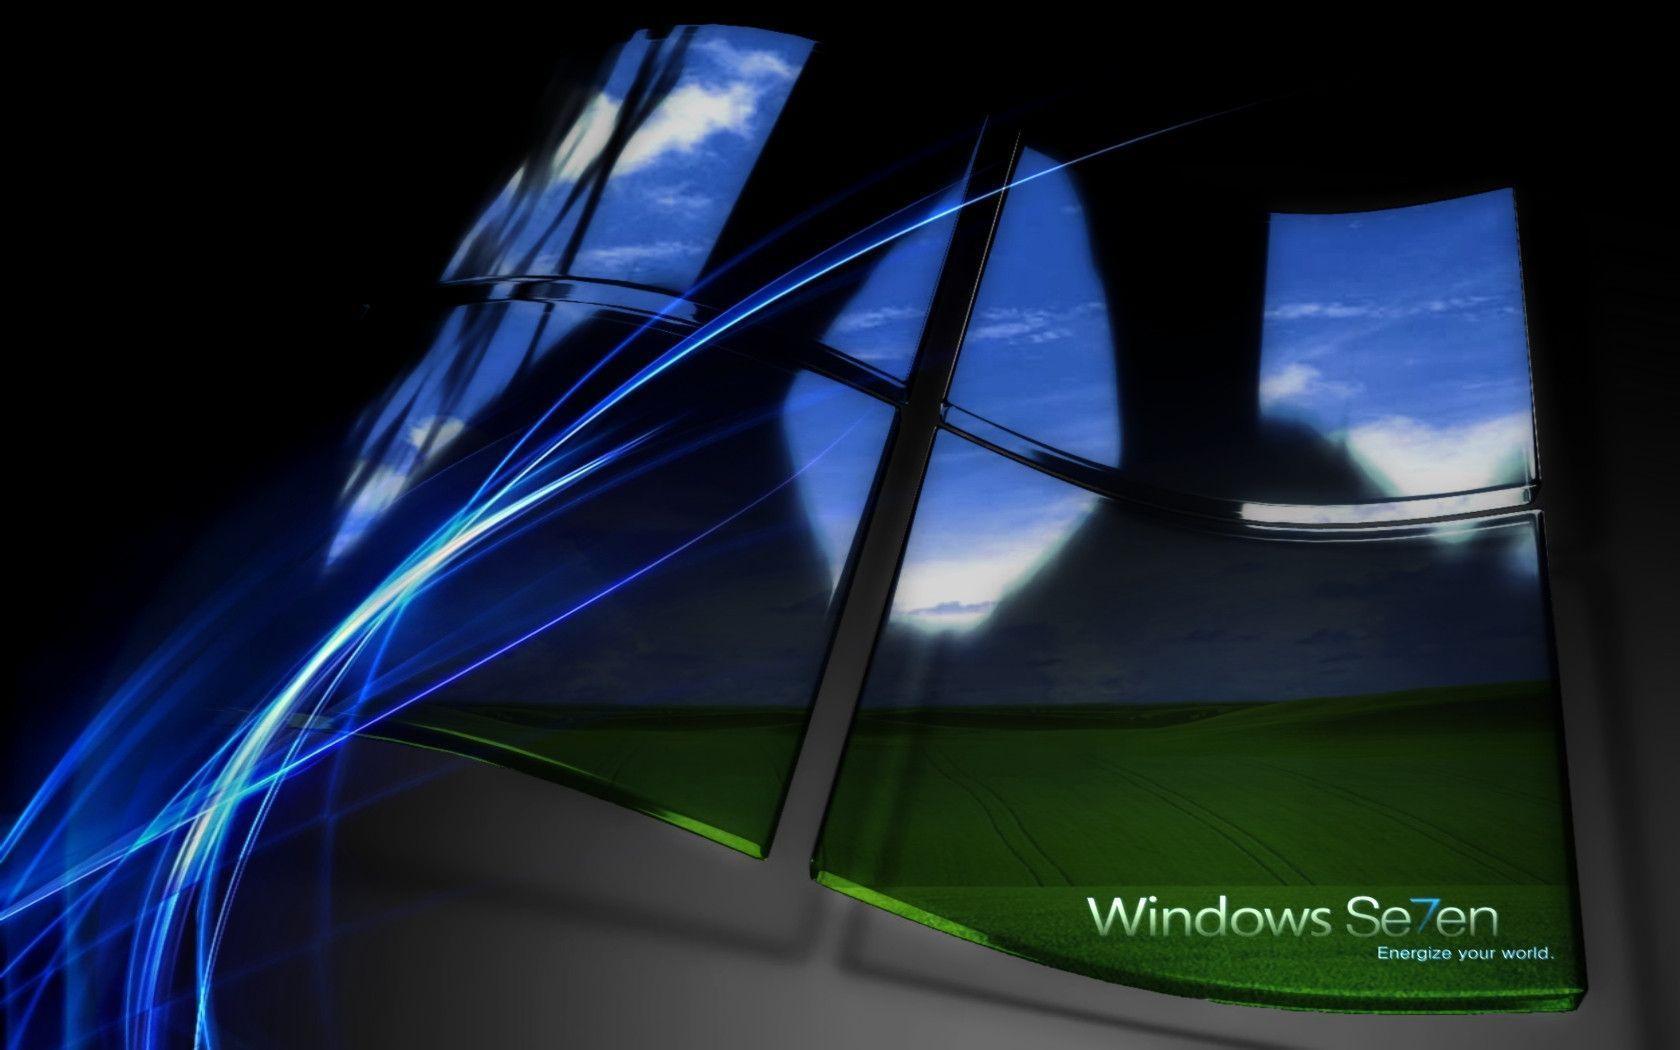 HD Wallpaper for Windows 7 Ultimate Wallpaper Inn